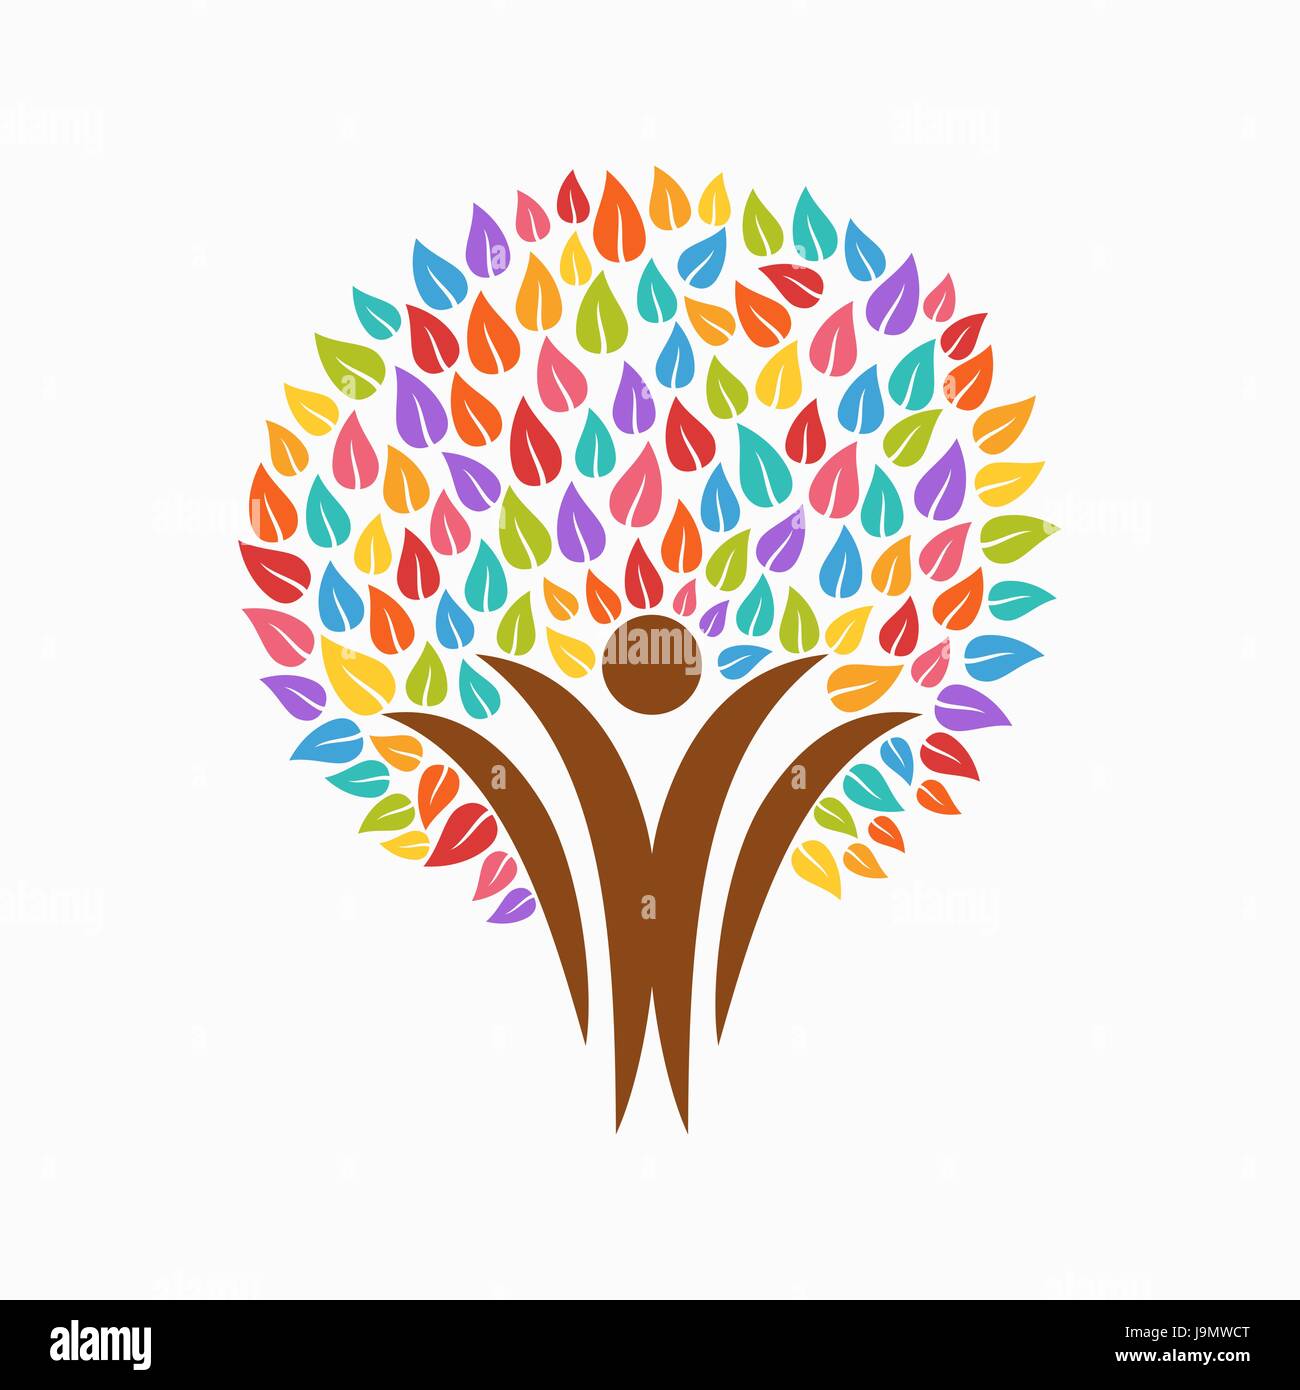 Symbole de l'arbre coloré avec des gens silhouettes. Concept illustration pour aider à l'organisation du projet, l'environnement ou de travail social. Vecteur EPS10. Illustration de Vecteur